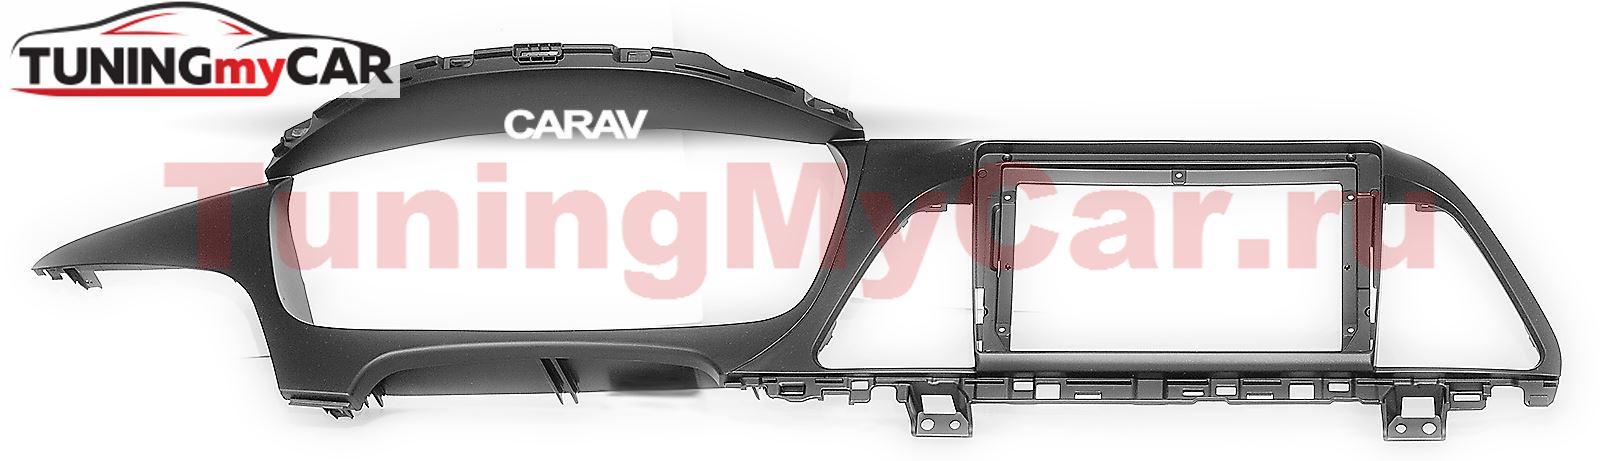 Переходная рамка для установки автомагнитолы CARAV 22-378: 9" / 230:220 x 130 mm / HYUNDAI Sonata 2015-2017